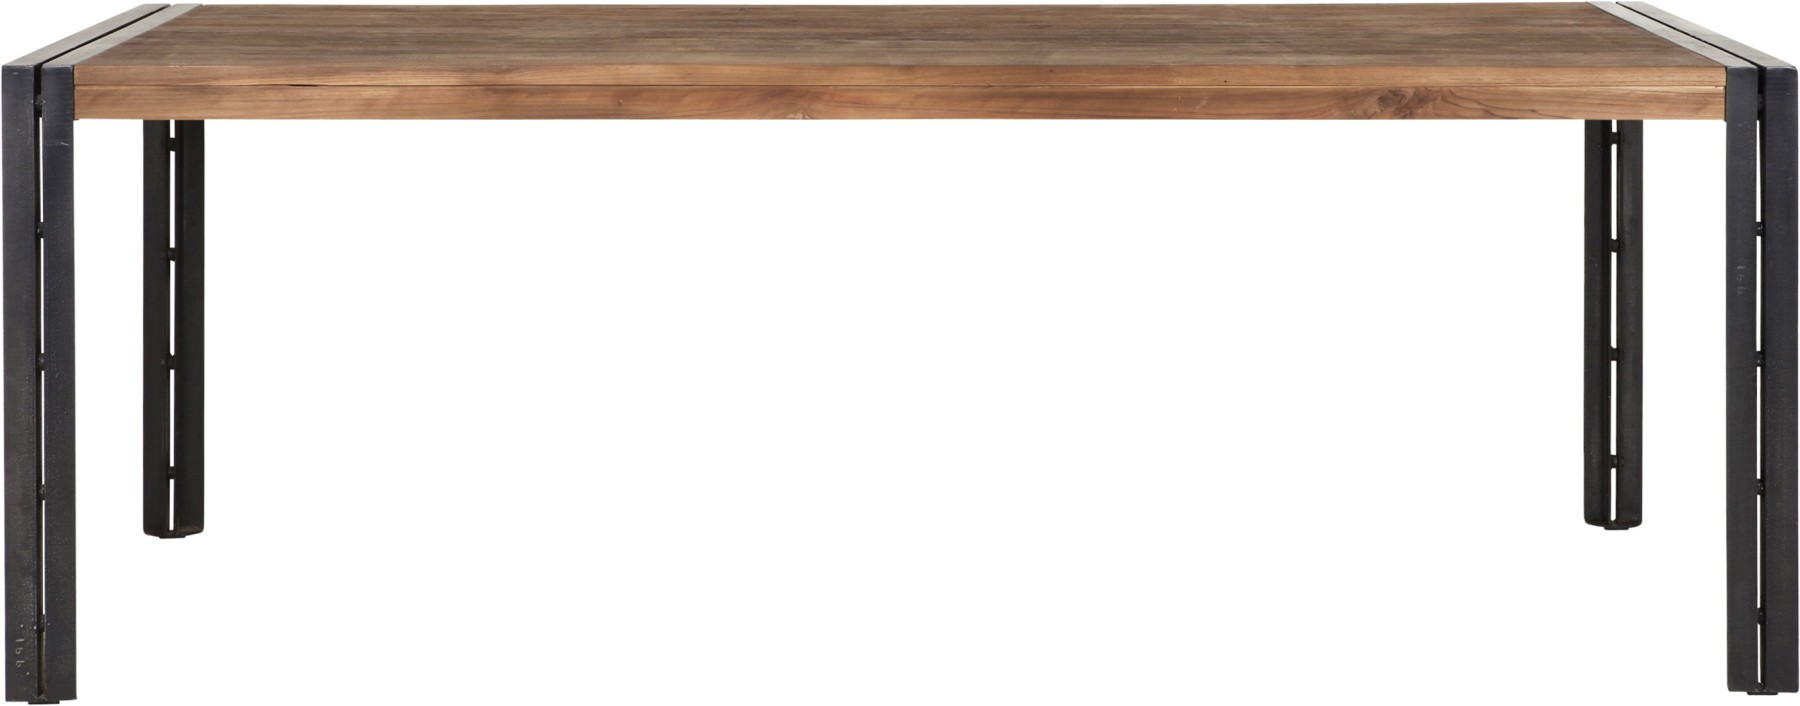 Tisch Industrie Holz Metall, Esstisch Industriedesign Metall, Länge 250 cm